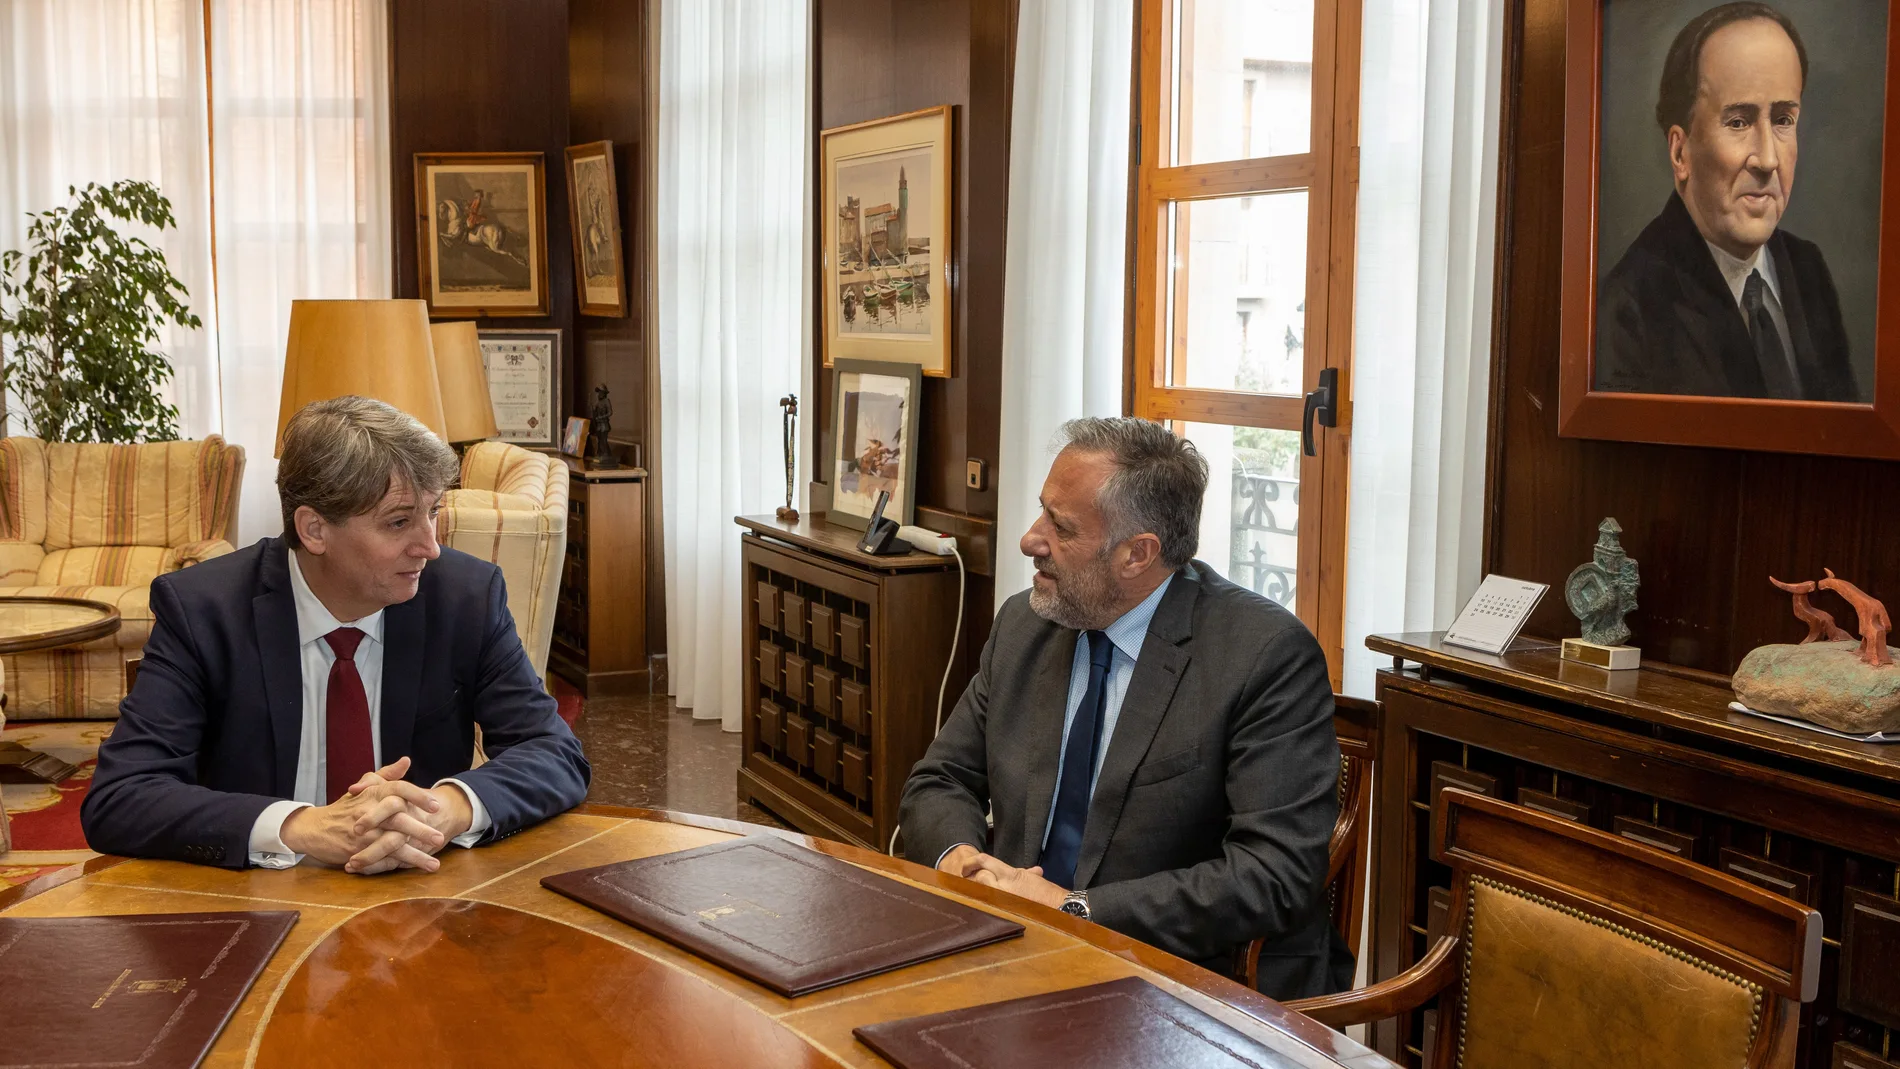 El presidente de las Cortes, Carlos Pollán, realiza una visita institucional a Soria. En la imagen con el alcalde Carlos Martínez